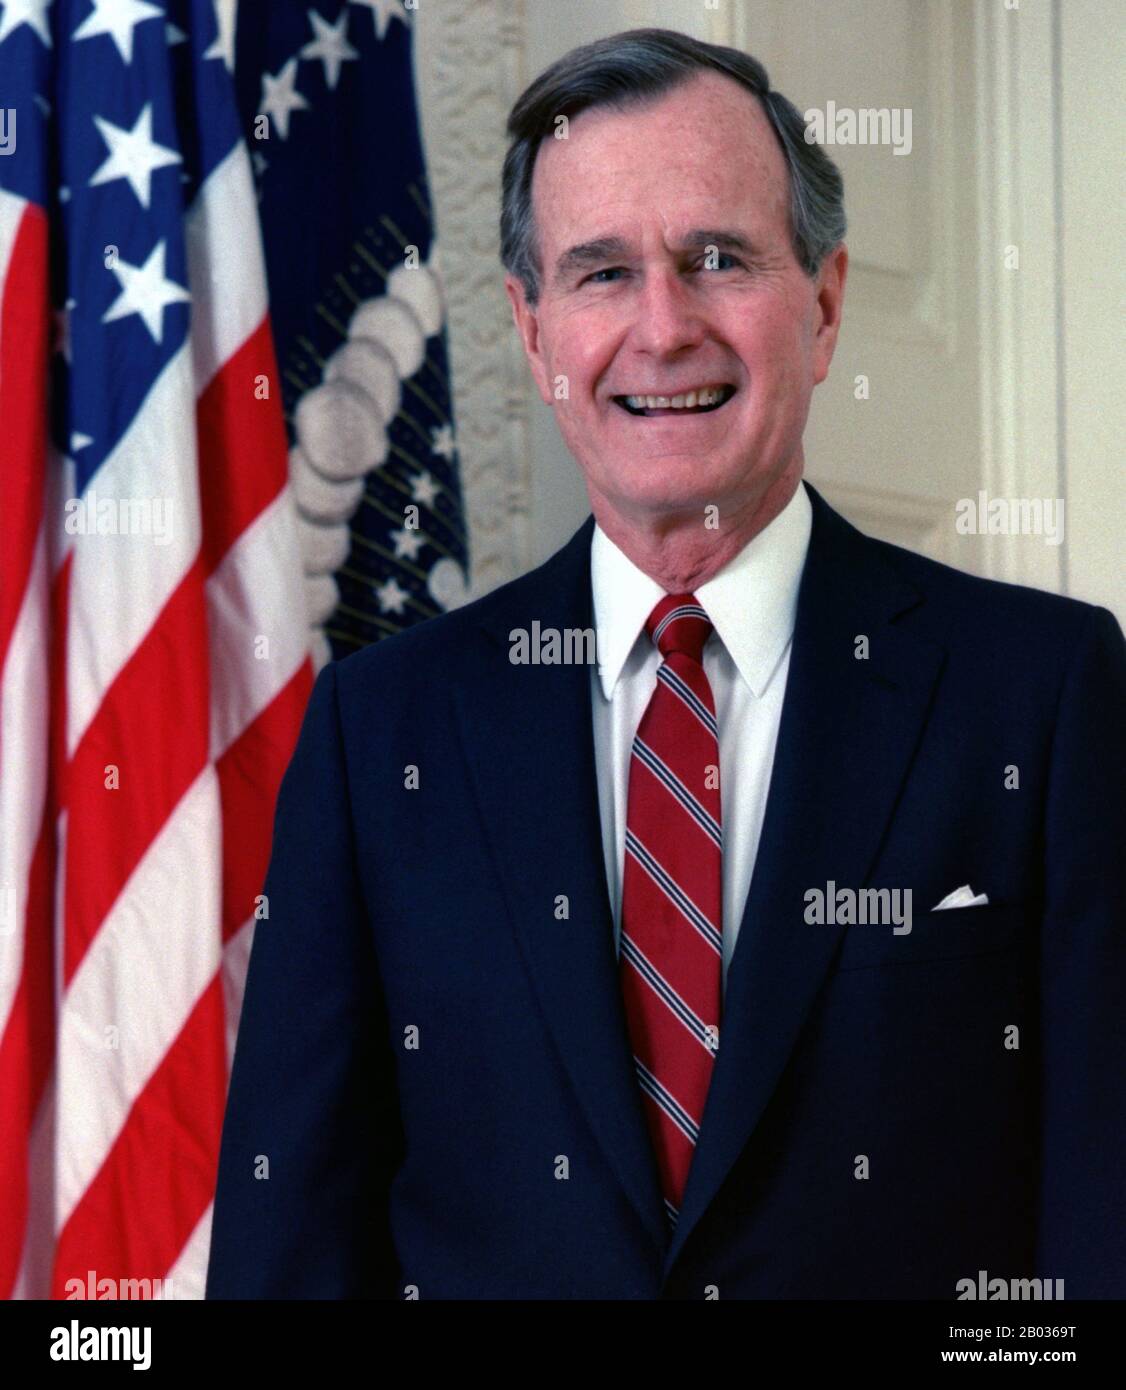 George Herbert Walker Bush (* 12. Juni 1924) ist ein US-amerikanischer Politiker, der von 1989 bis 1993 41. Und von 1981 bis 1989 43. Vizepräsident der Vereinigten Staaten war. Als Mitglied der US-Republikanischen Partei war er zuvor Kongressabgeordneter, Botschafter und Direktor für Central Intelligence. Stockfoto